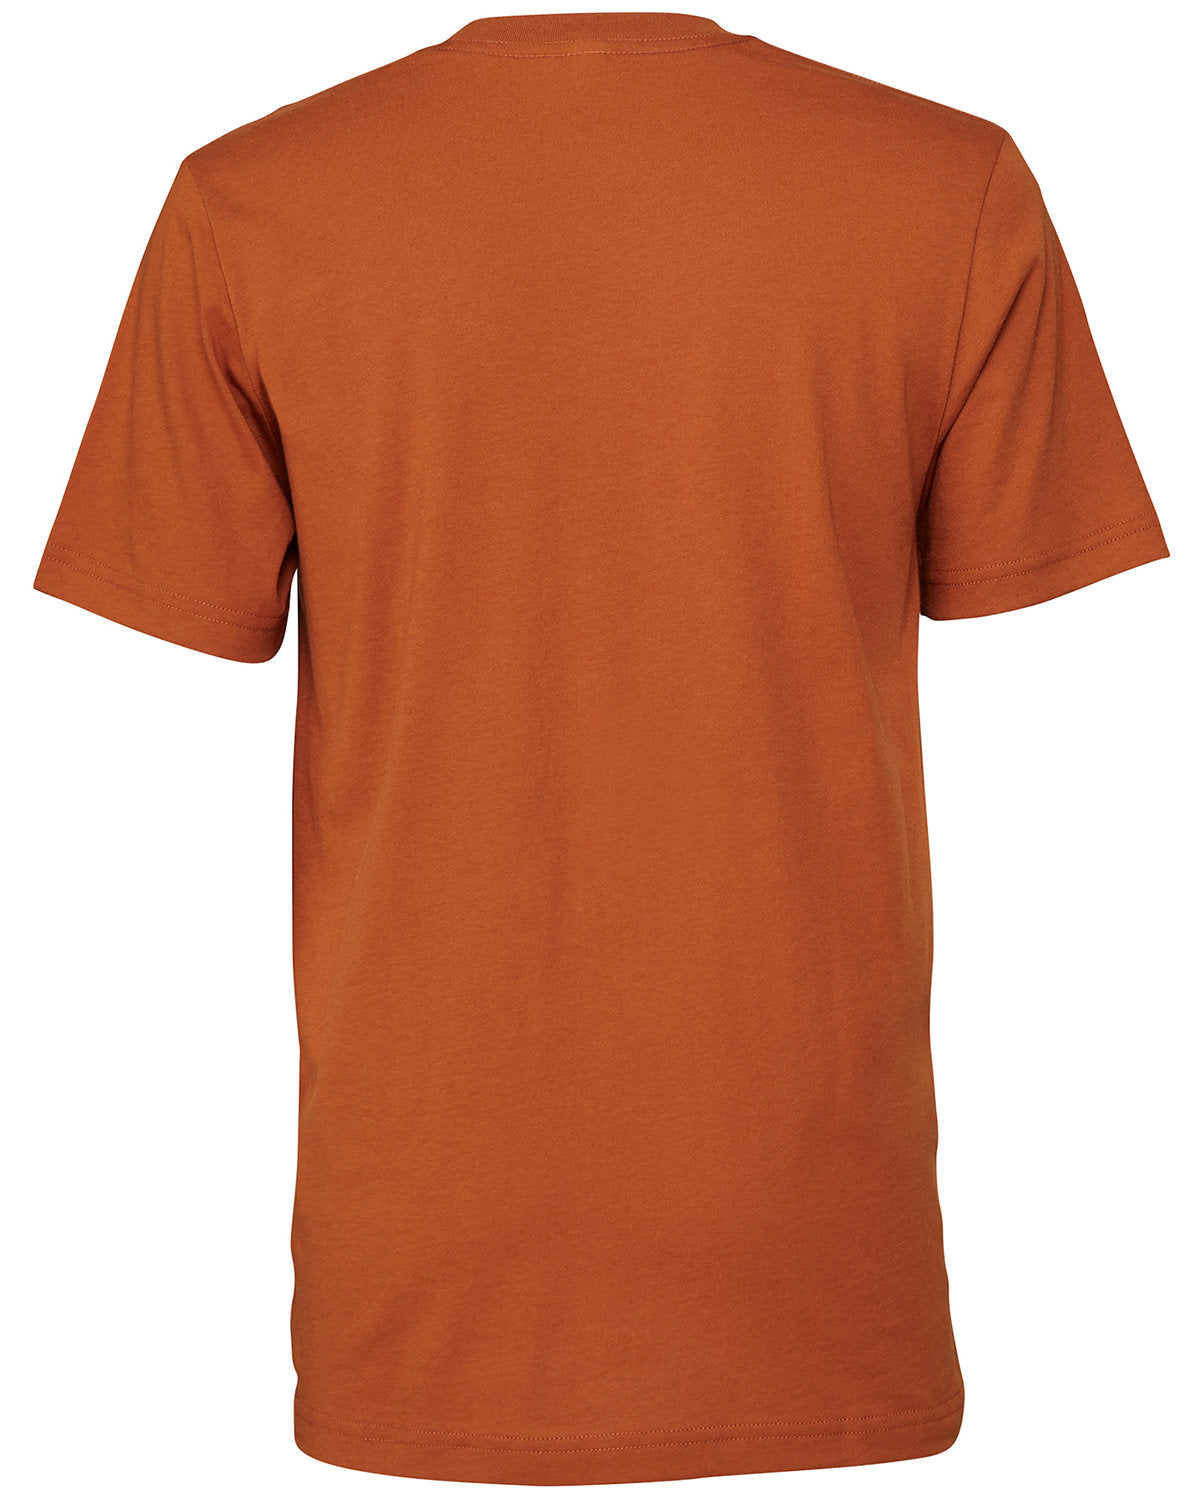 Unisex Jersey T-Shirt